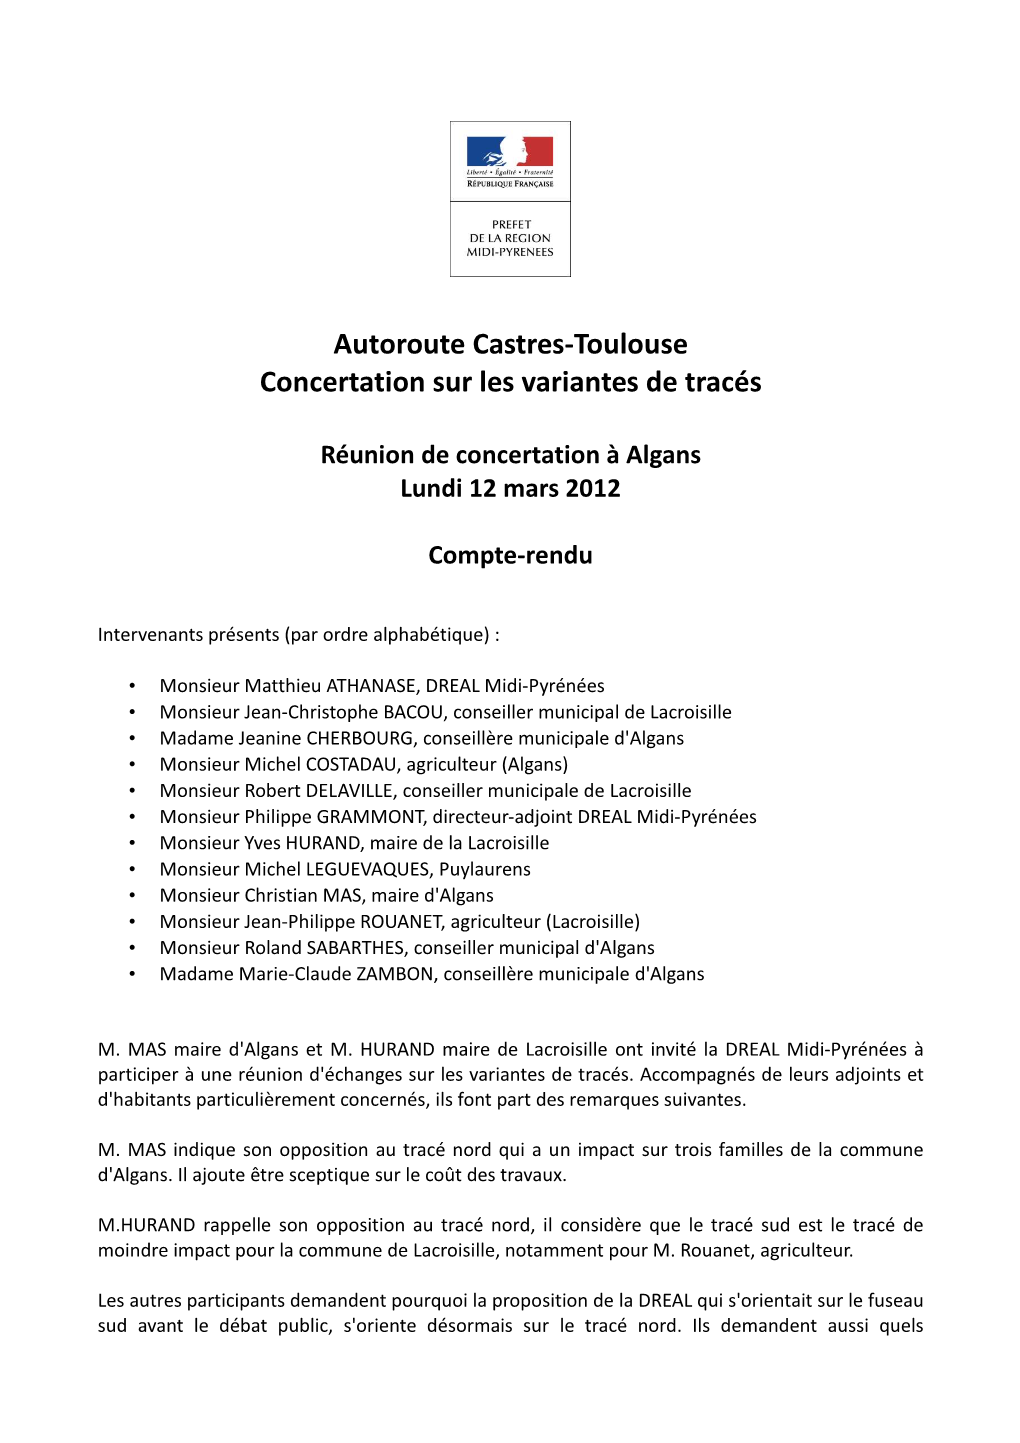 Autoroute Castres-Toulouse Concertation Sur Les Variantes De Tracés